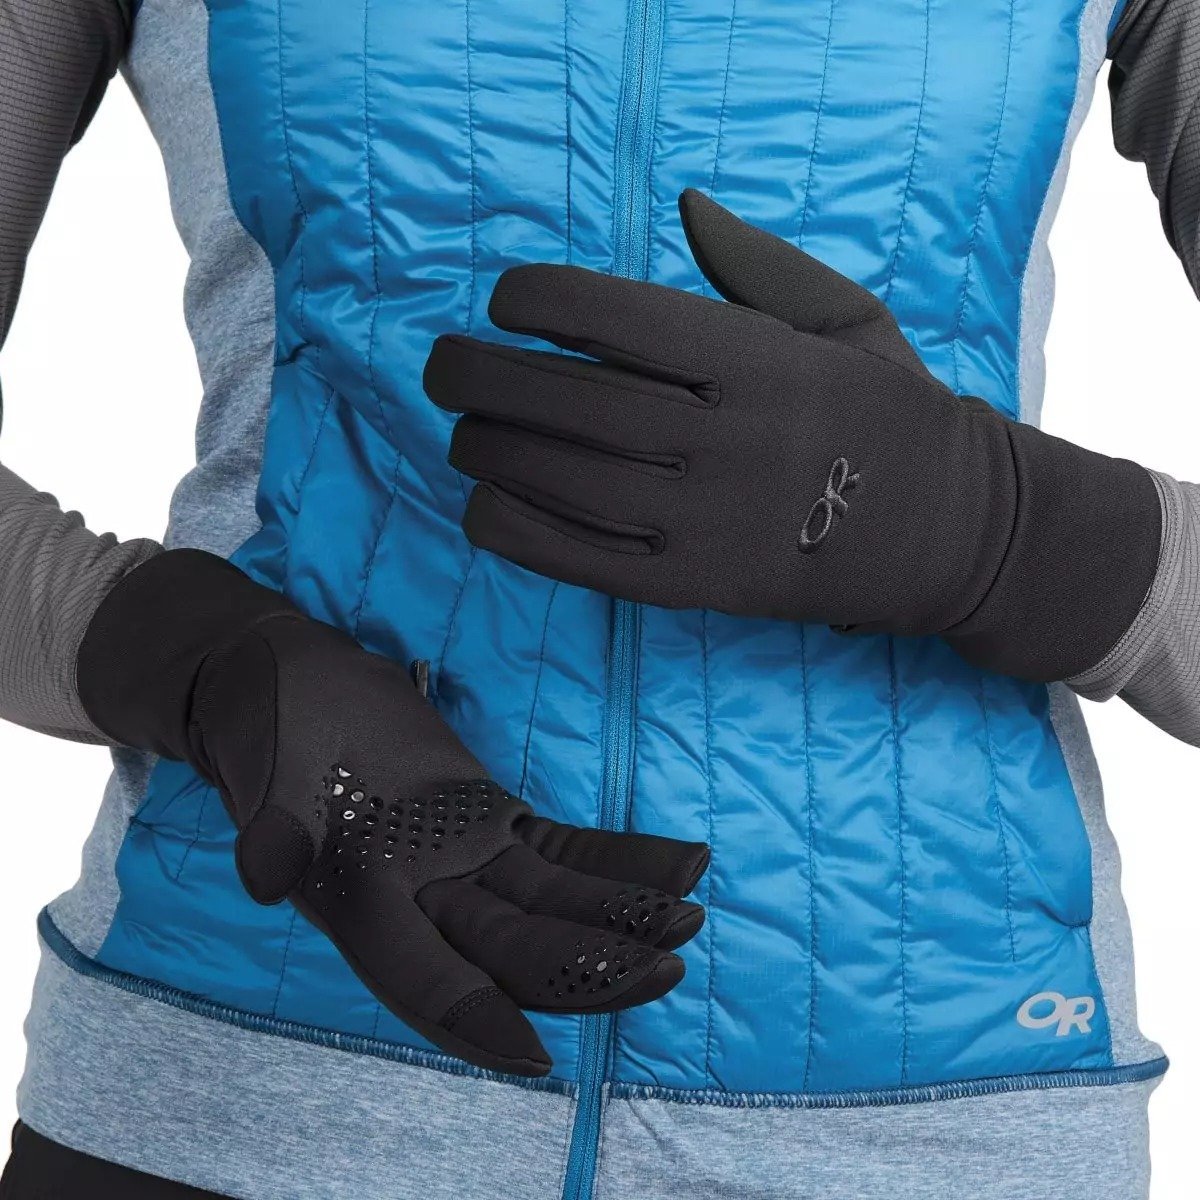 Outdoor Research Vigor Lightweight Sensor Gloves - Men's